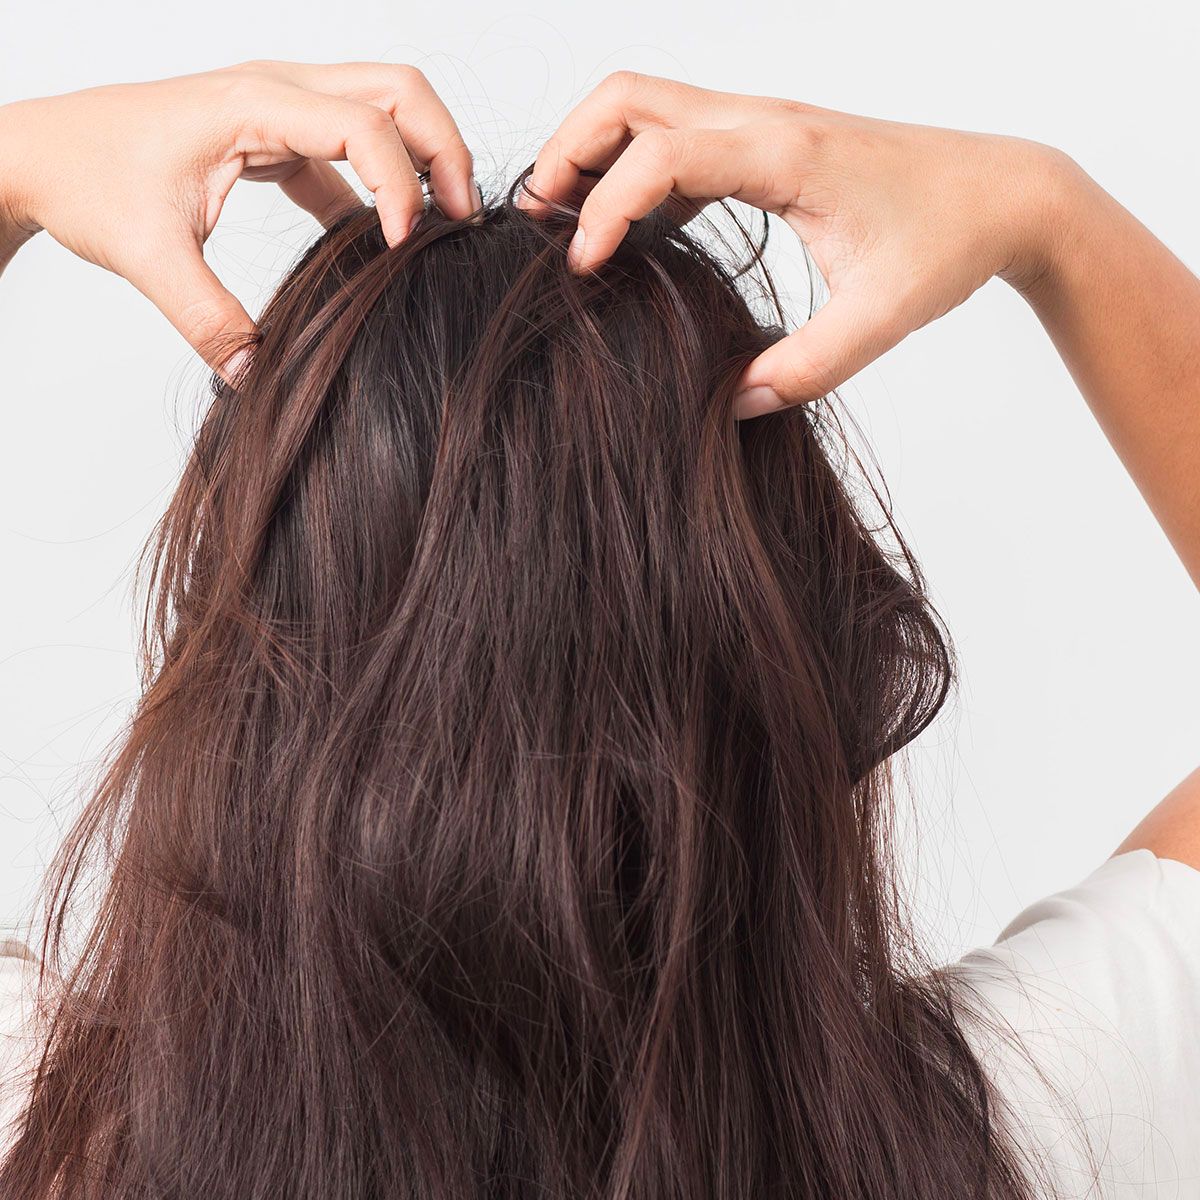 5 несложных изменений в уходе за волосами, чтобы сохранить их красоту